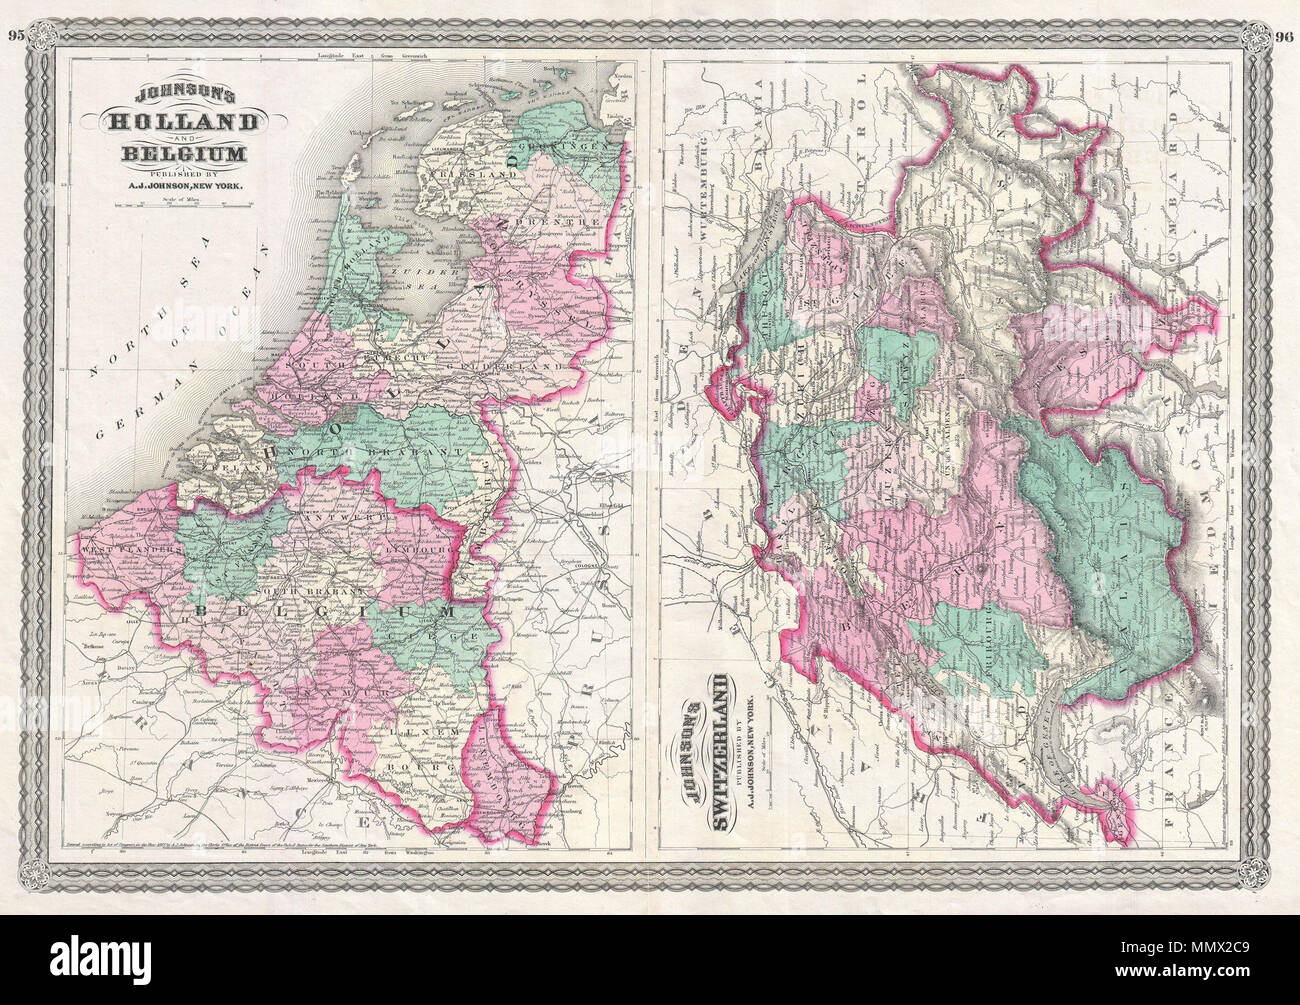 Englisch: Dies ist A.J.Johnson 1870 Karte der Schweiz, Holland (Niederlande)  und Belgien. Dies ist eigentlich ein Composite auf einem einzigen folio  Blatt aus zwei Karten früher auf einem eigenen Blatt ausgegeben.